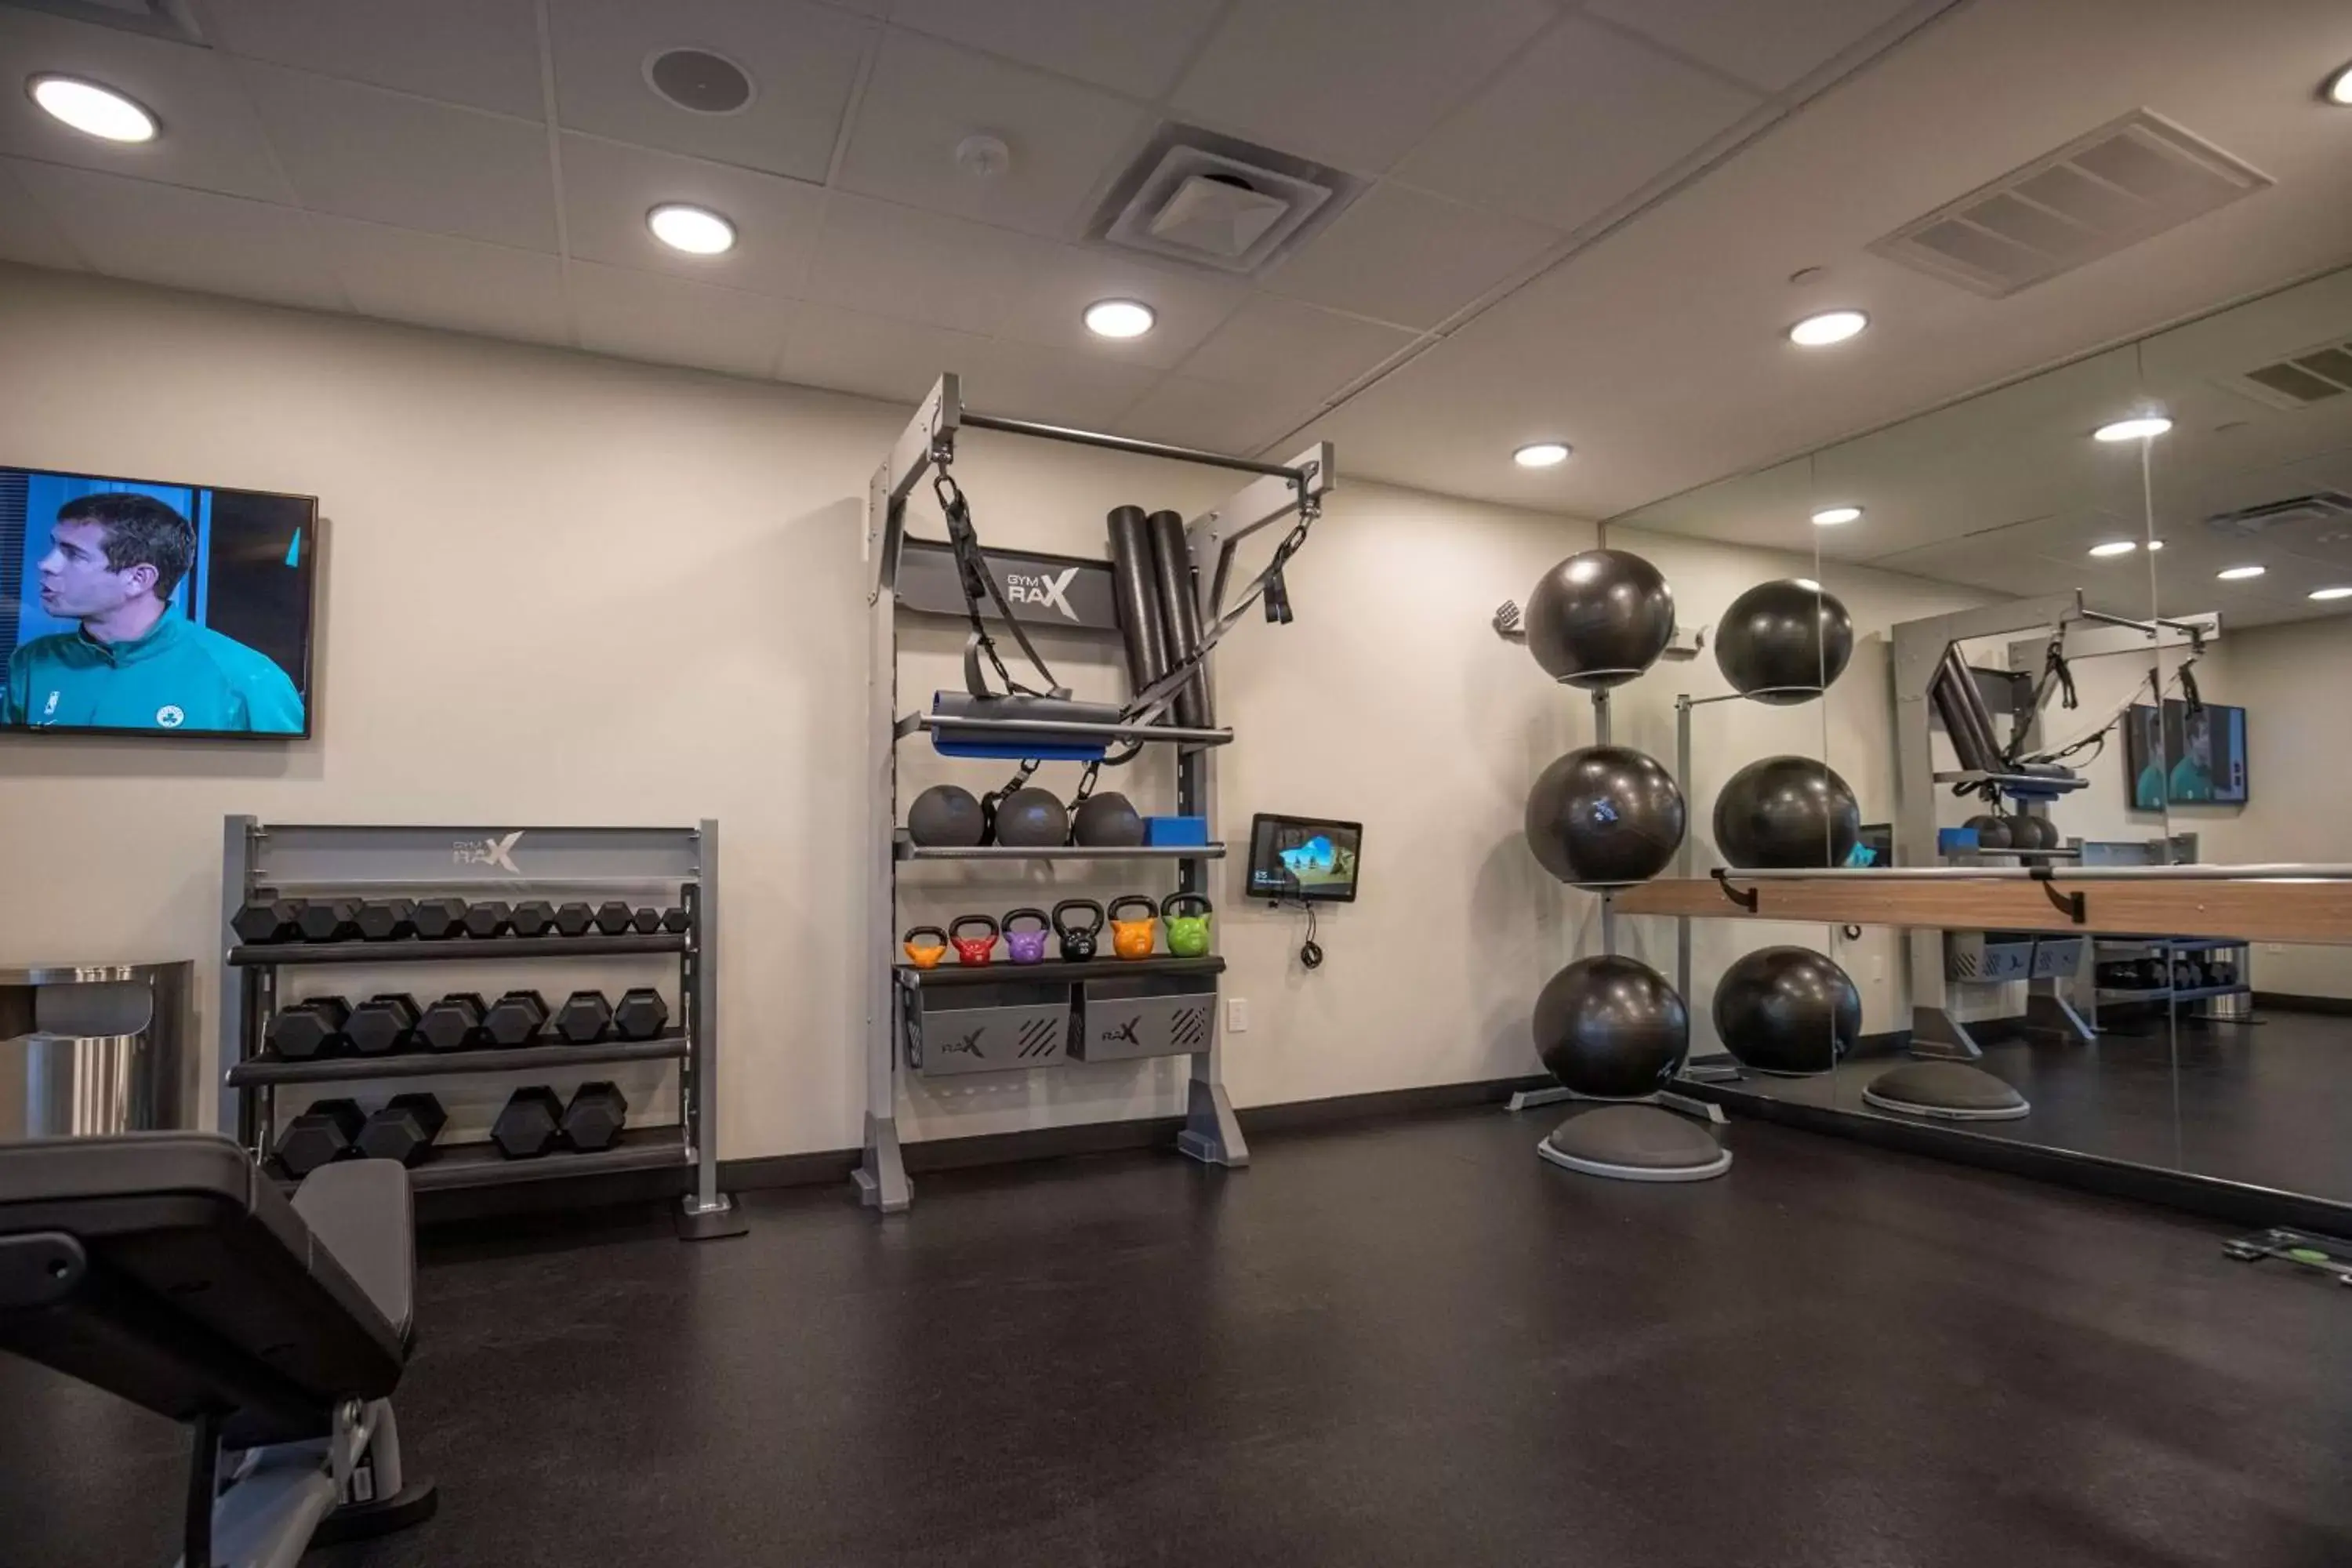 Fitness centre/facilities, Fitness Center/Facilities in Tru By Hilton Allen Dallas, Tx